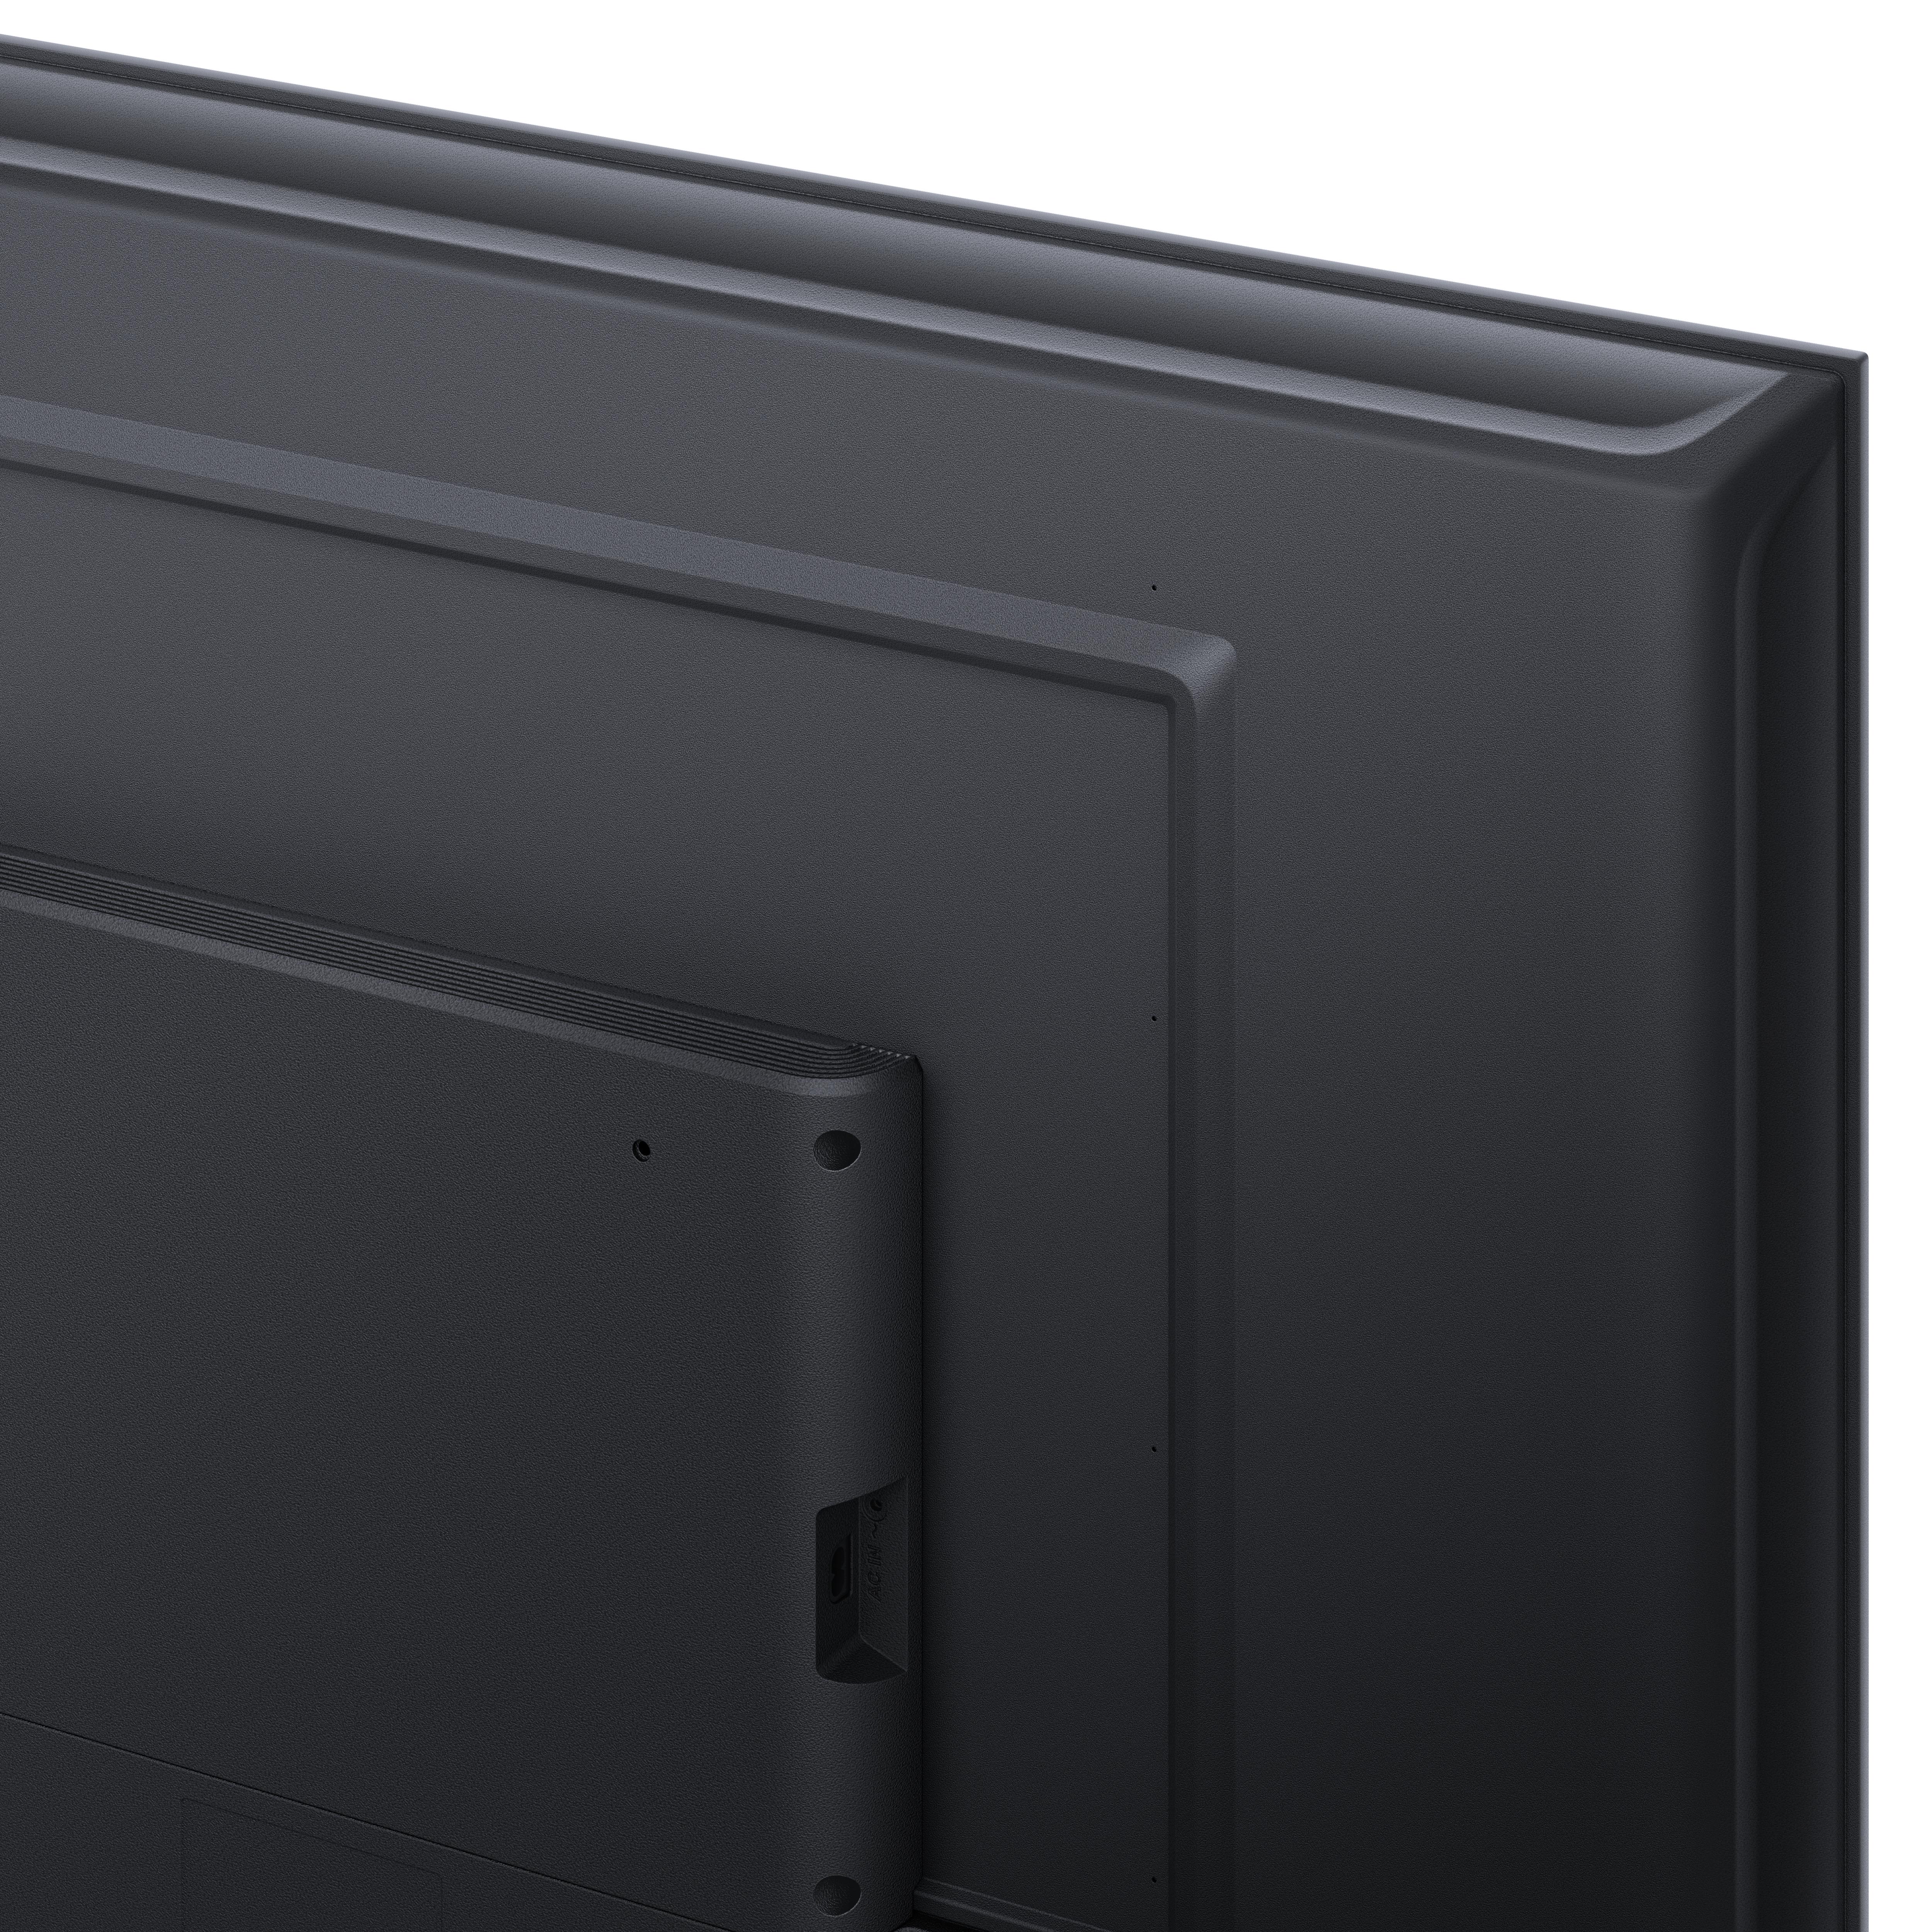 Xiaomi 50A2 127 cm (50) 4K Ultra HD Smart TV WiFi Noir : :  Electrónica